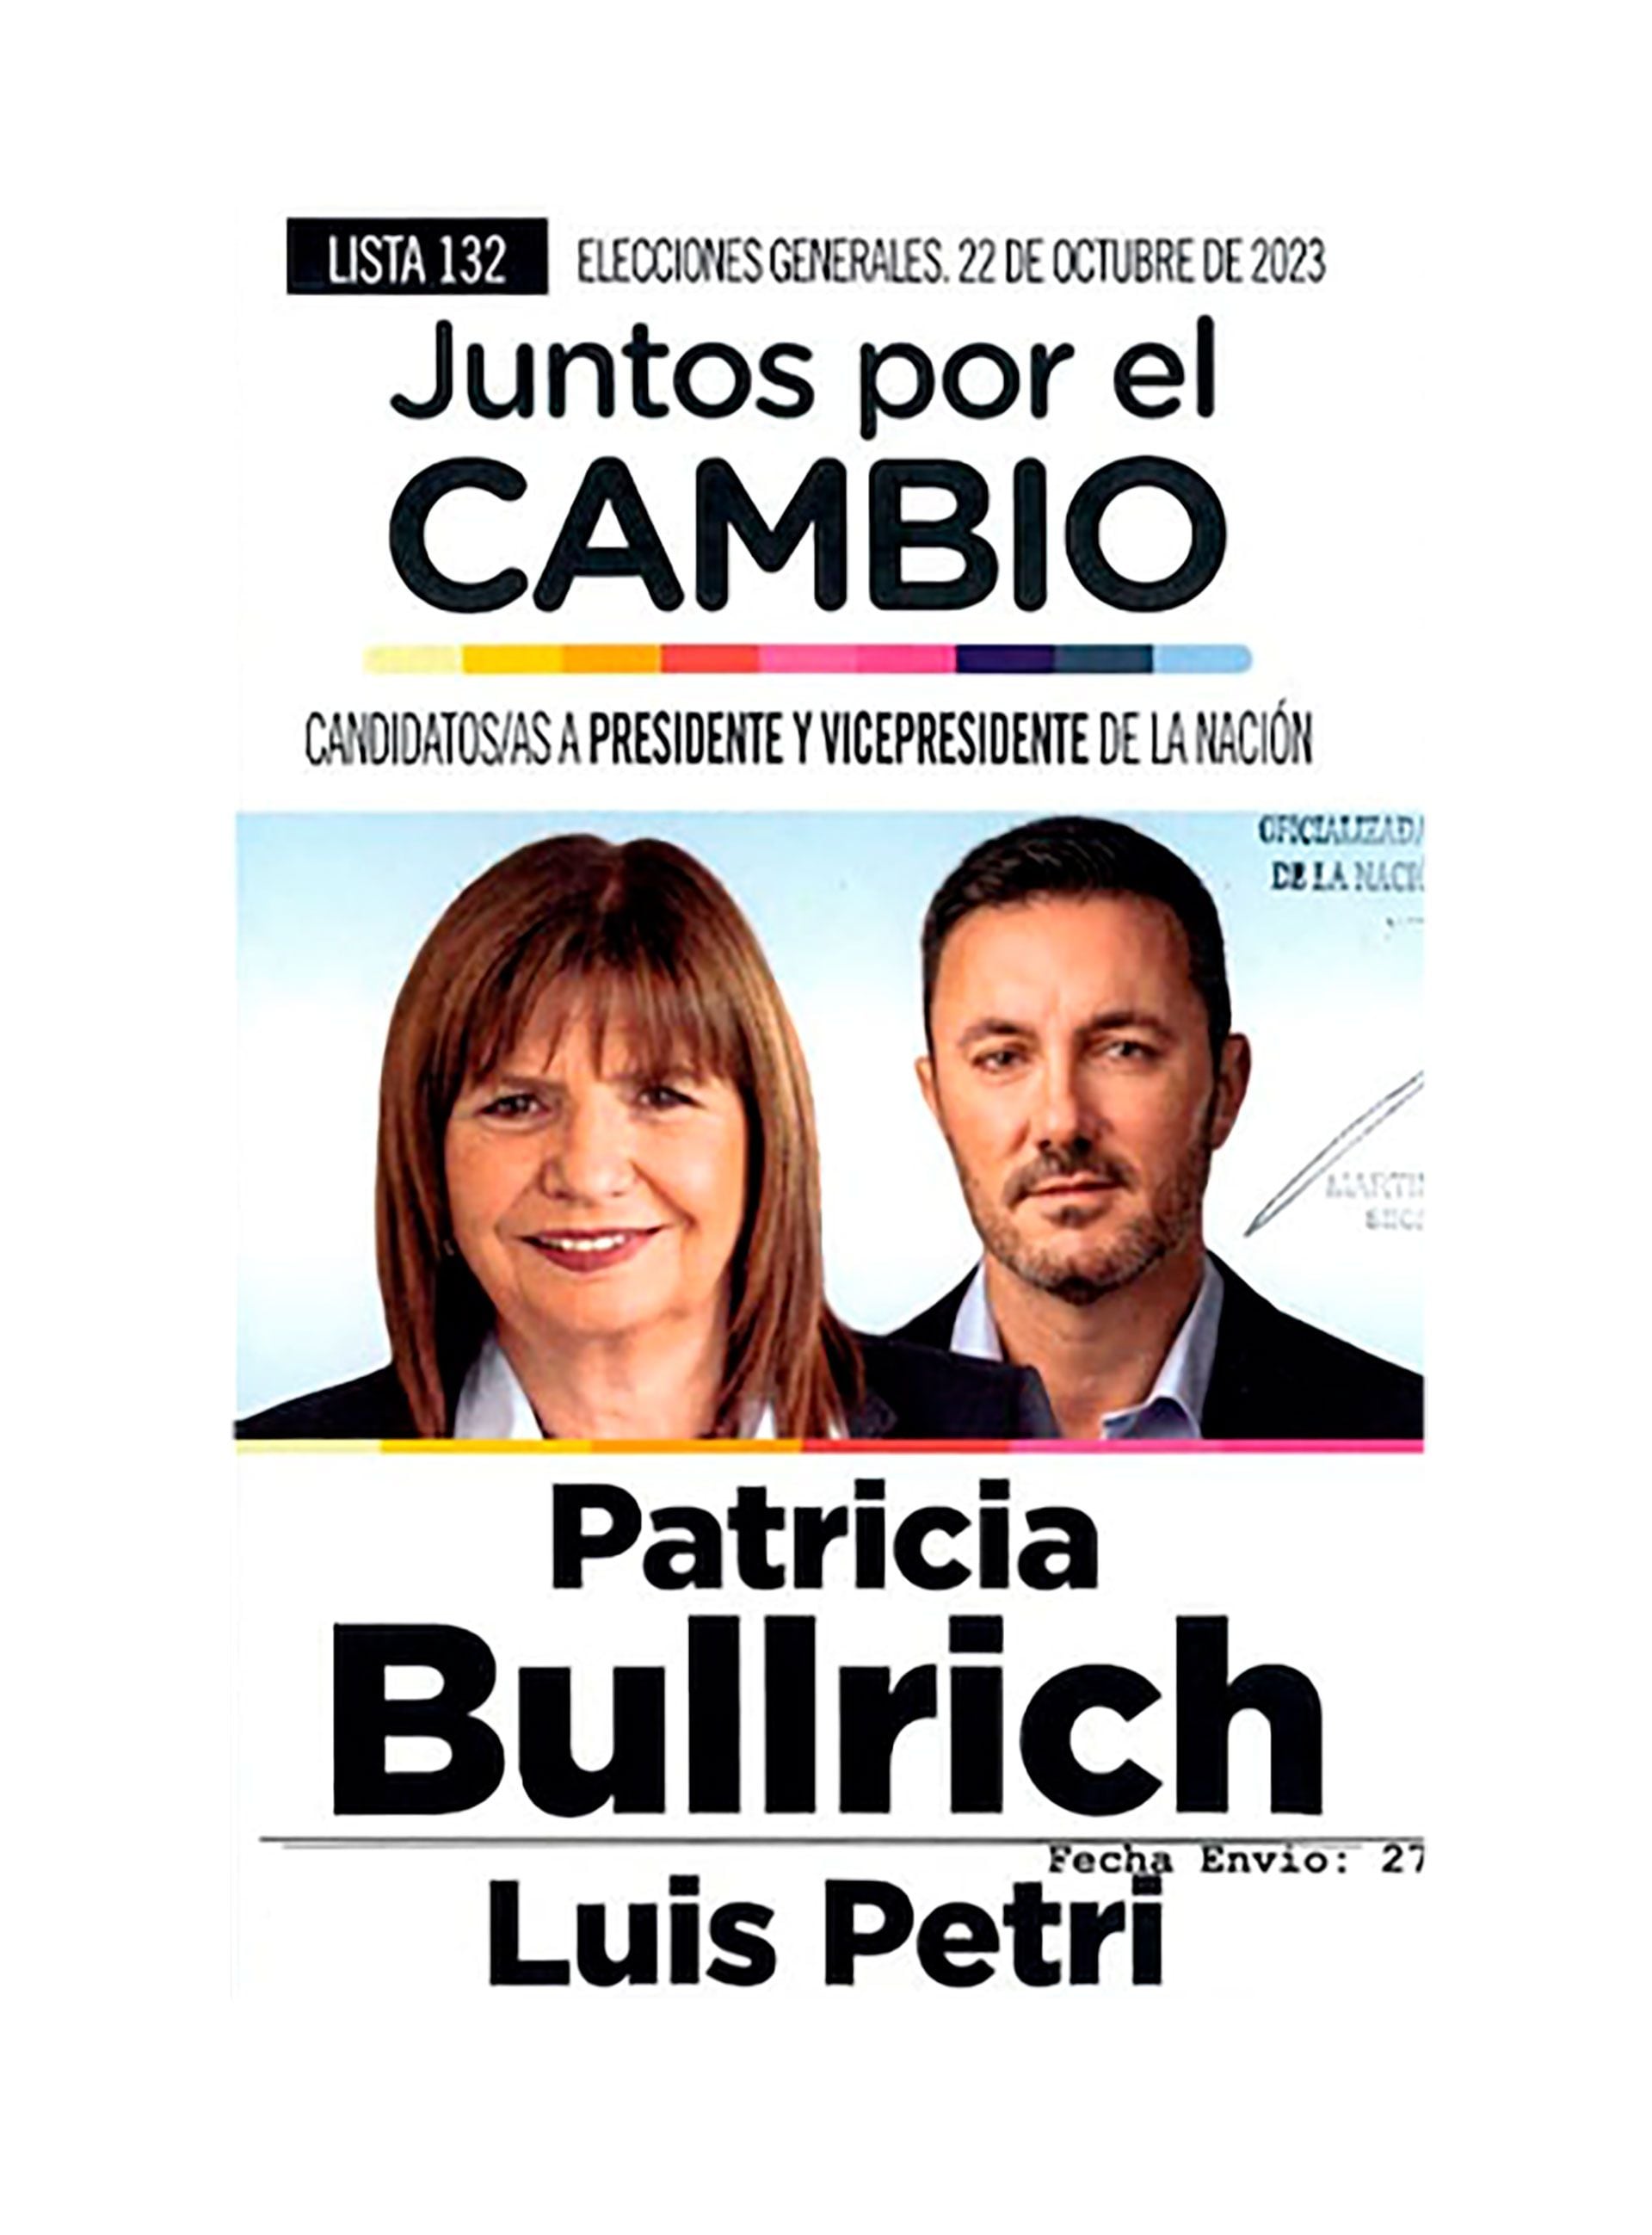 La boleta de Patricia Bullrich y Luis Petri